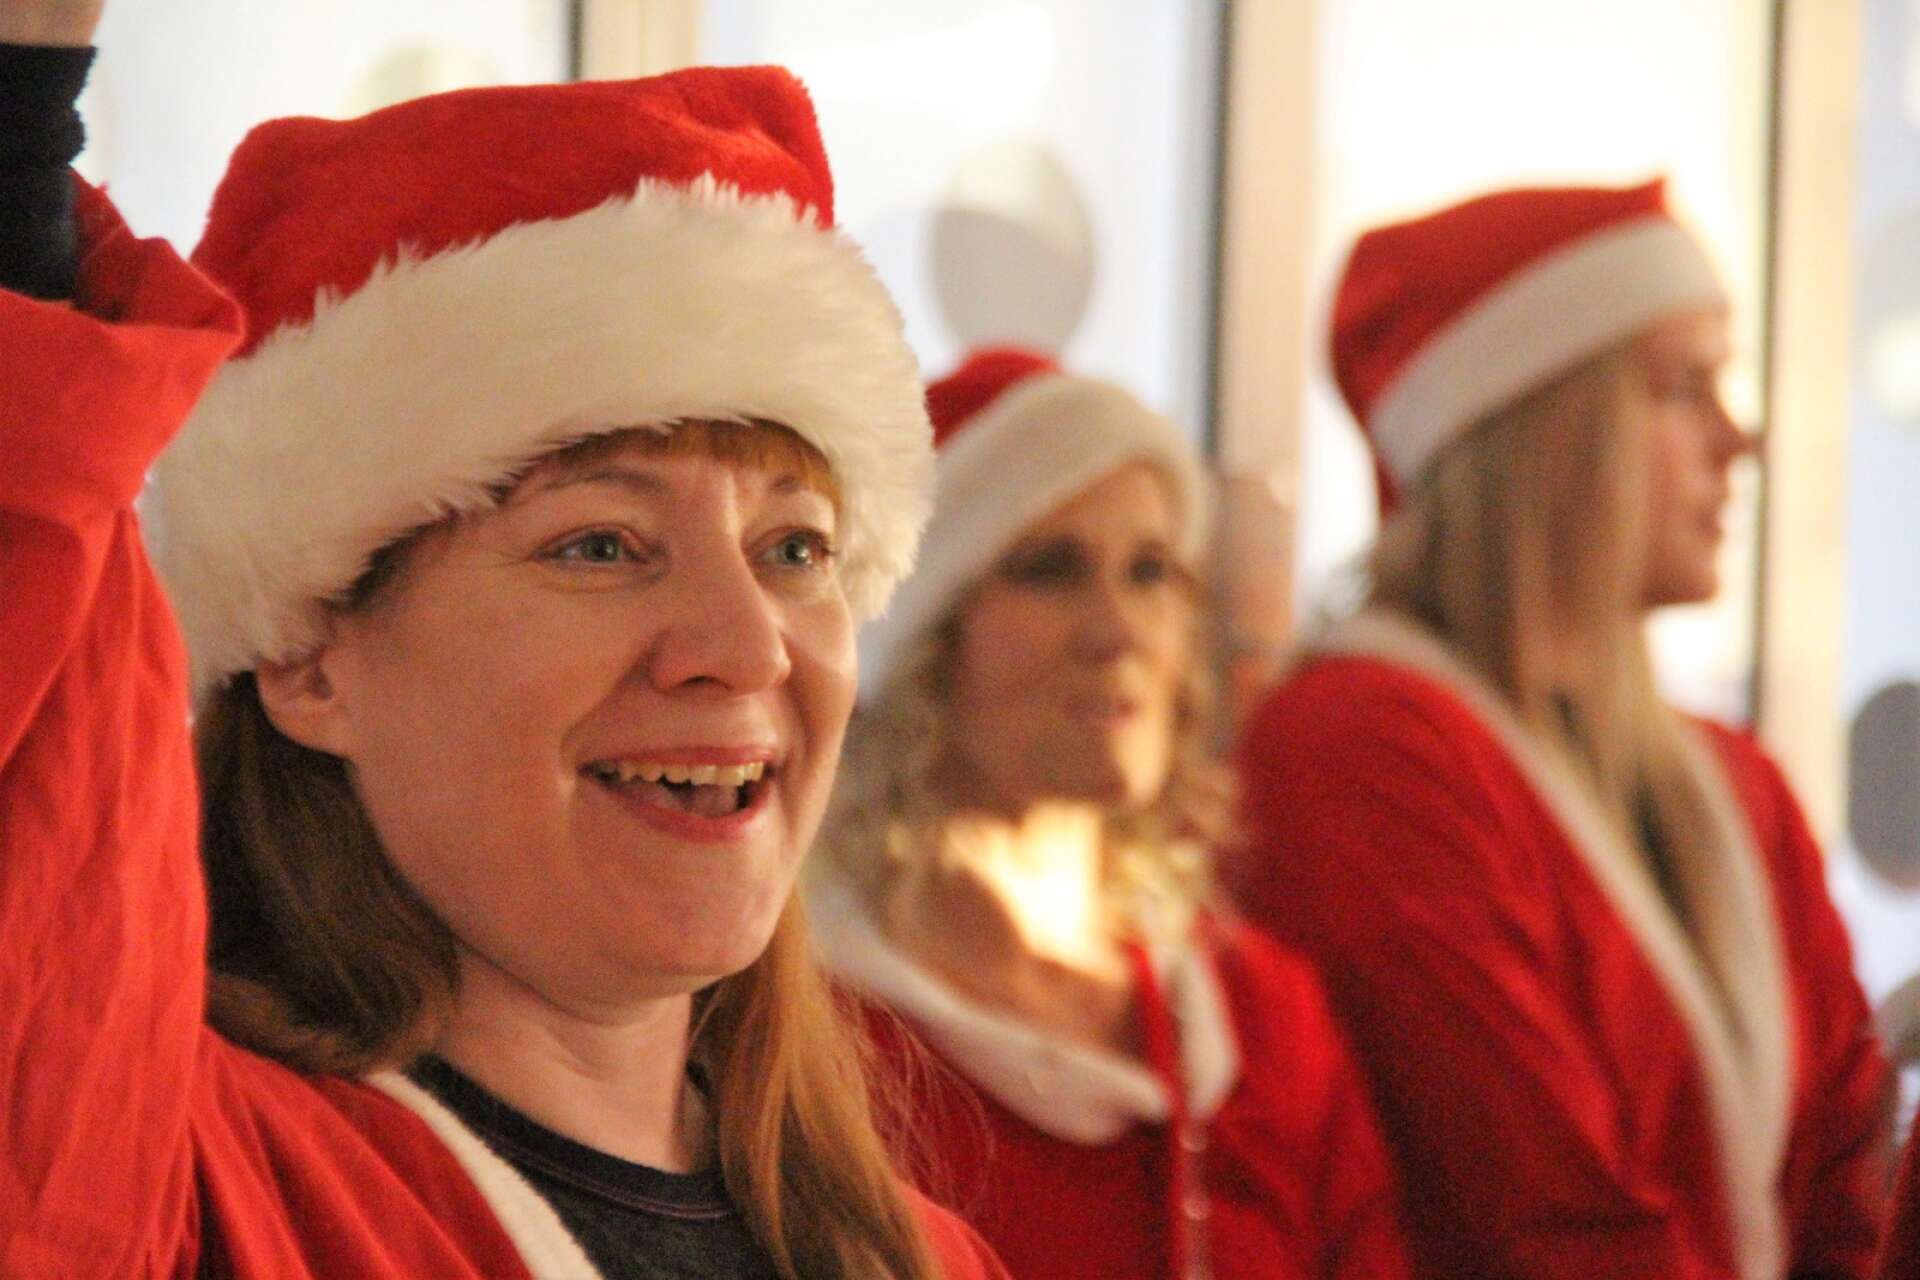 Förutom Jultomten själv, har kanske Sifhällatomtarnas ledare Malin Axelsson mest energi under julen.